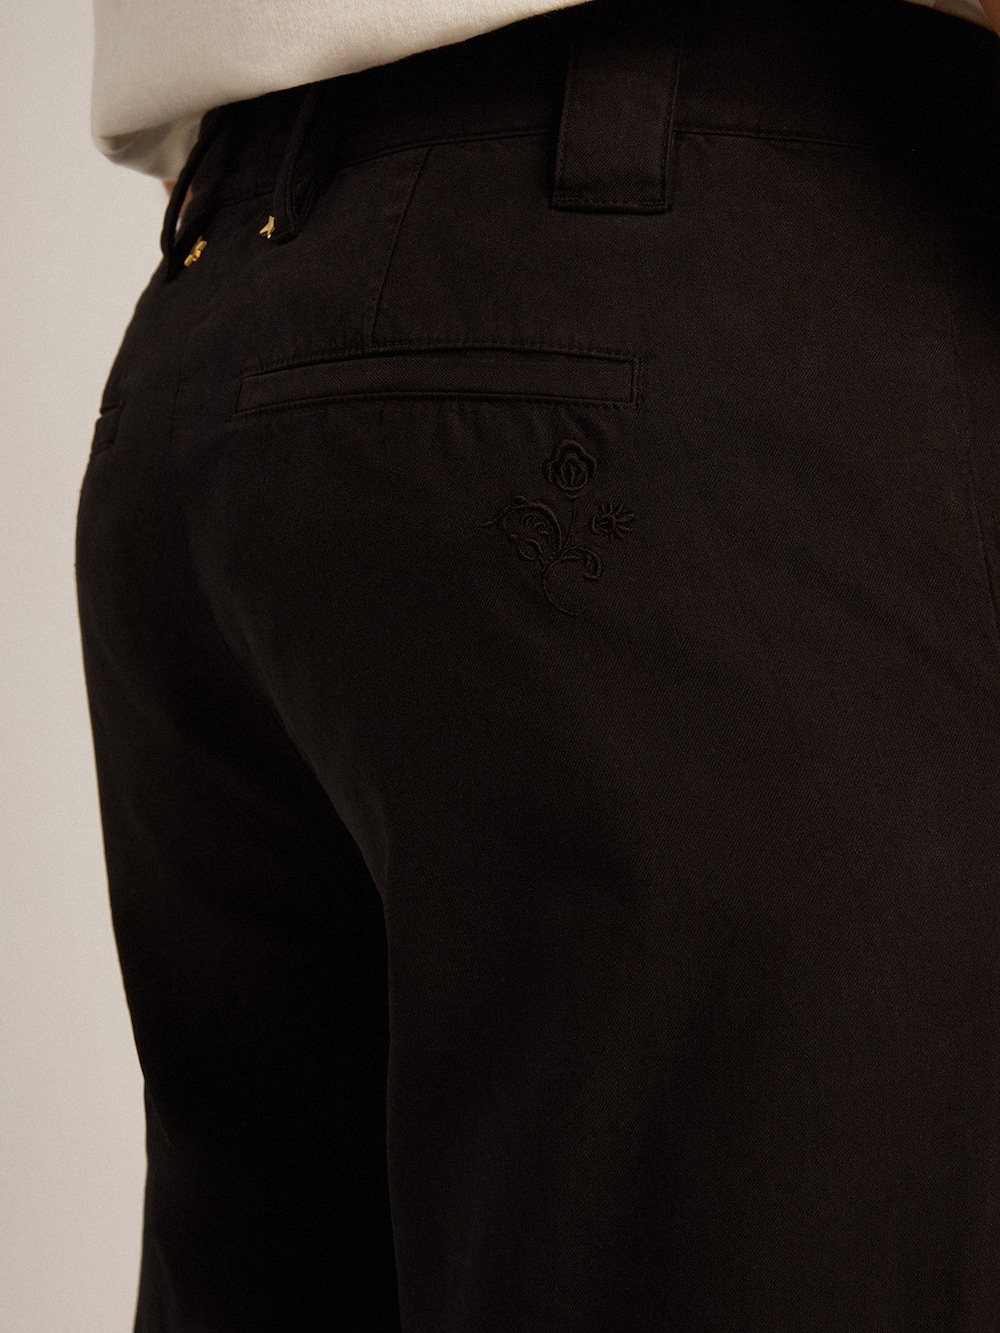 Golden Goose - Pantalón chino en gabardina de algodón de color negro   in 